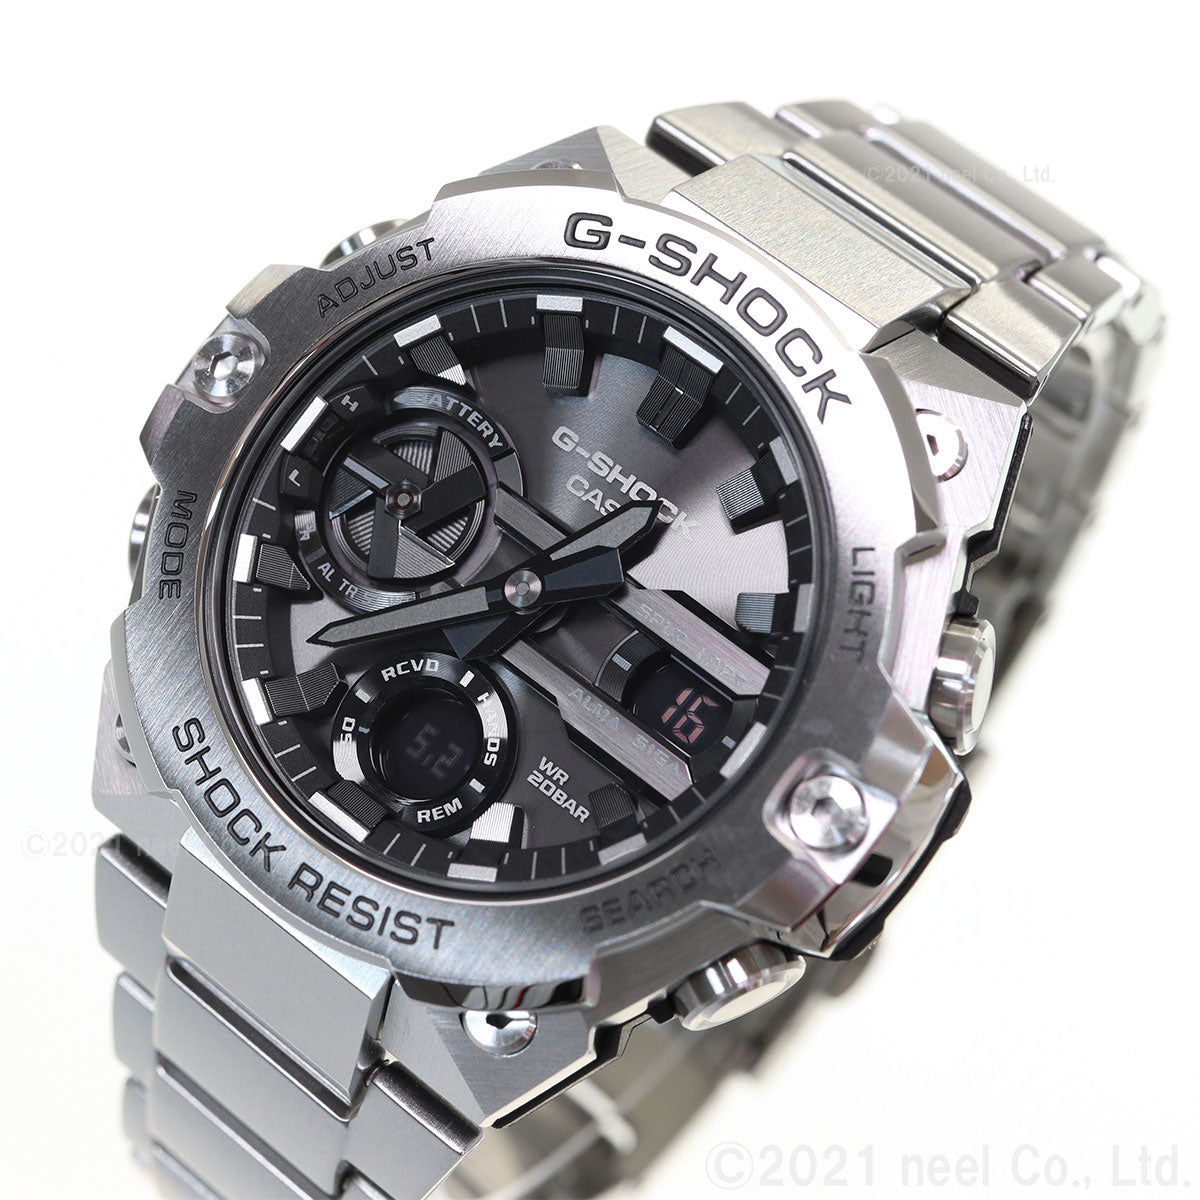 G-SHOCK ソーラー G-STEEL カシオ Gショック Gスチール CASIO 腕時計 メンズ タフソーラー GST-B400D-1AJF